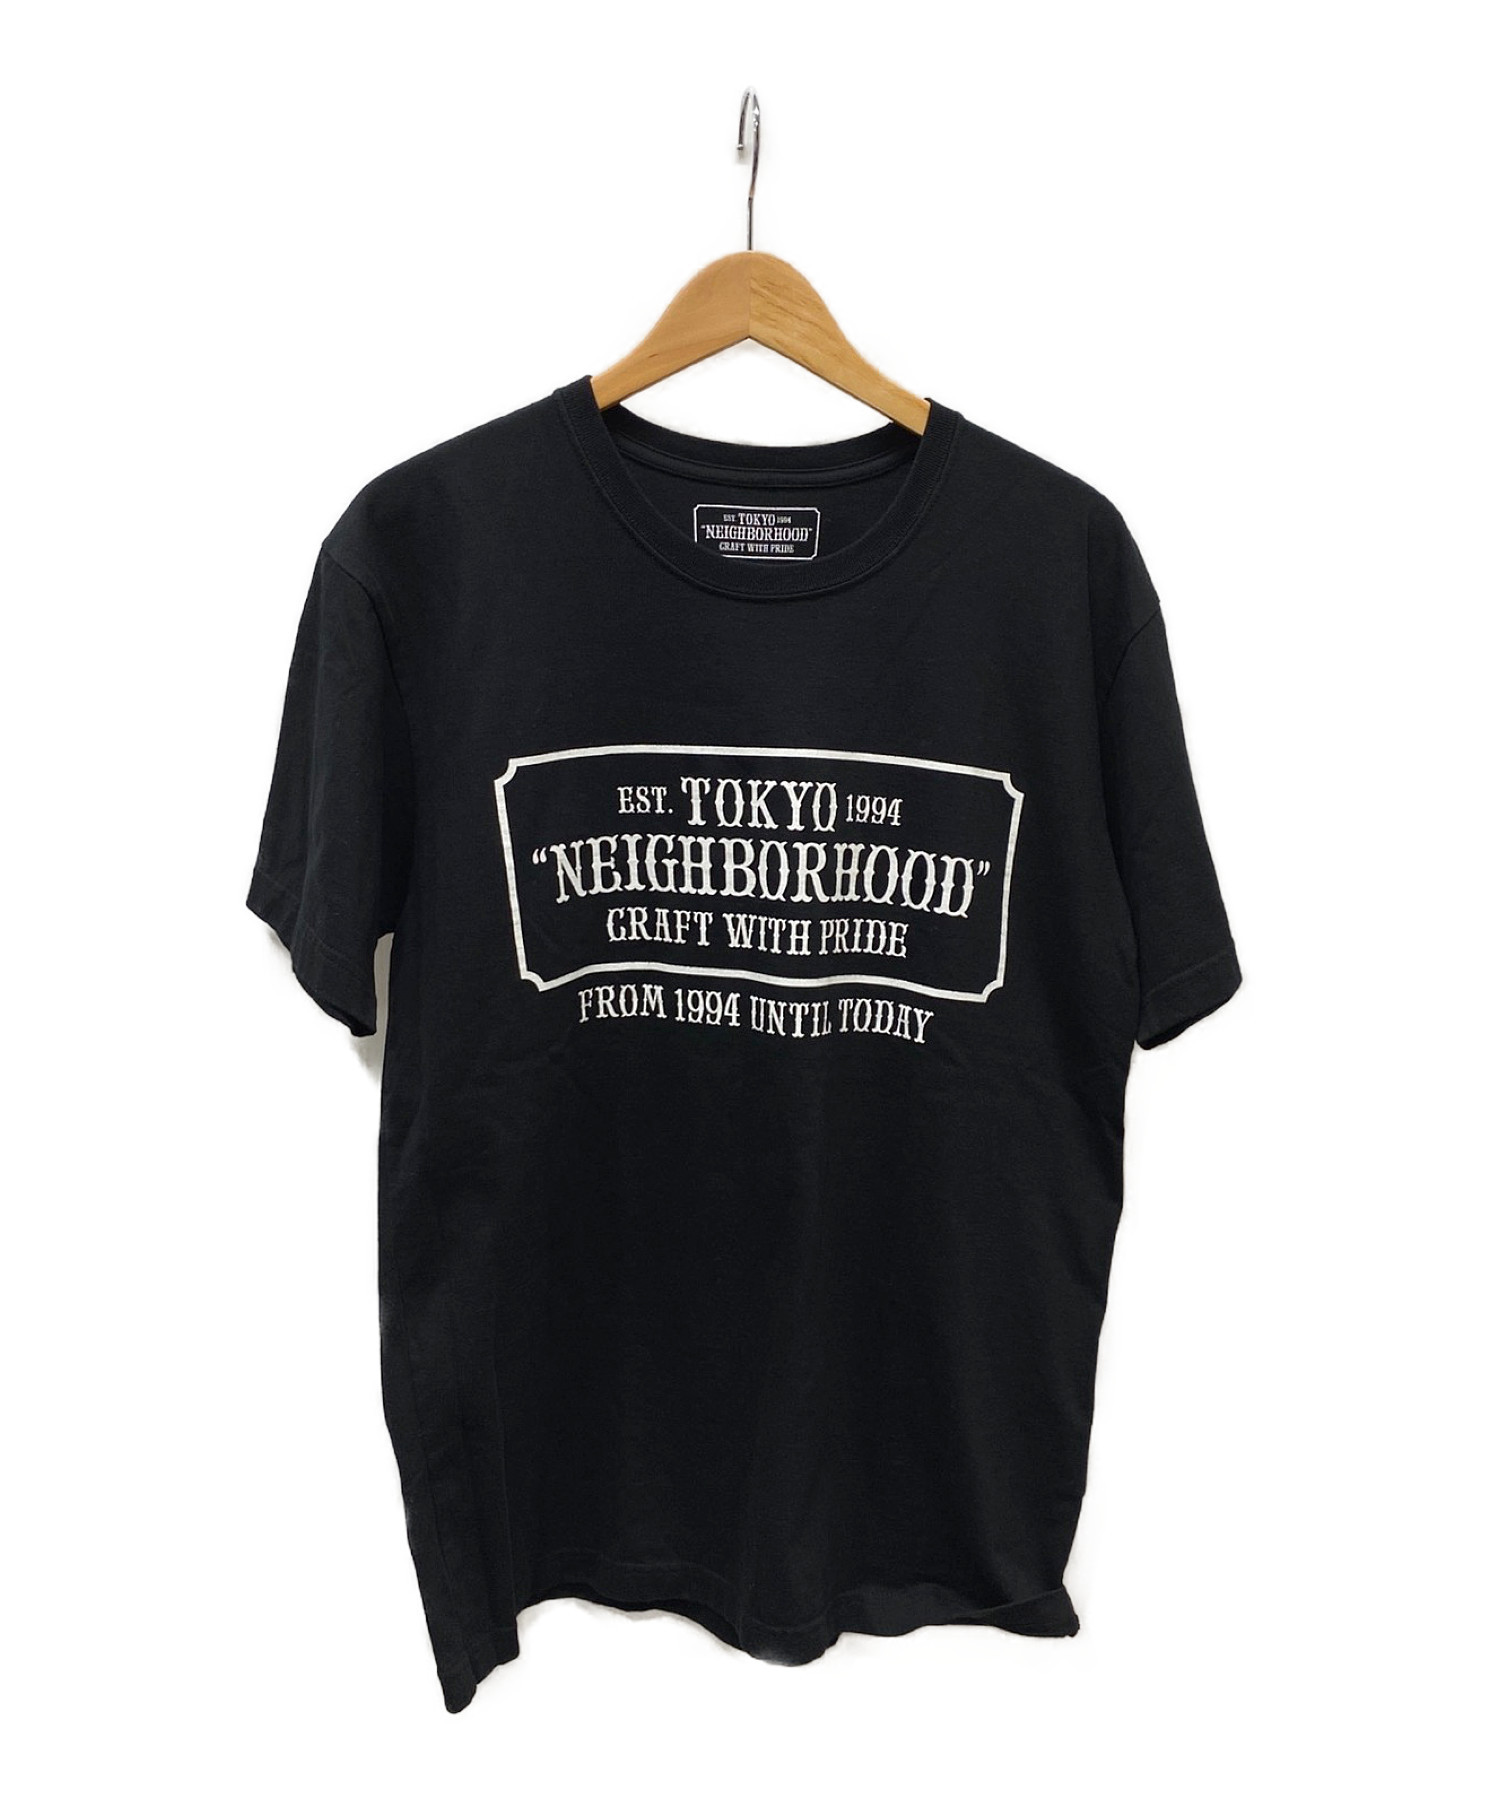 選択 NEIGHBORHOOD ネイバーフッド ロゴ プリント Tシャツ